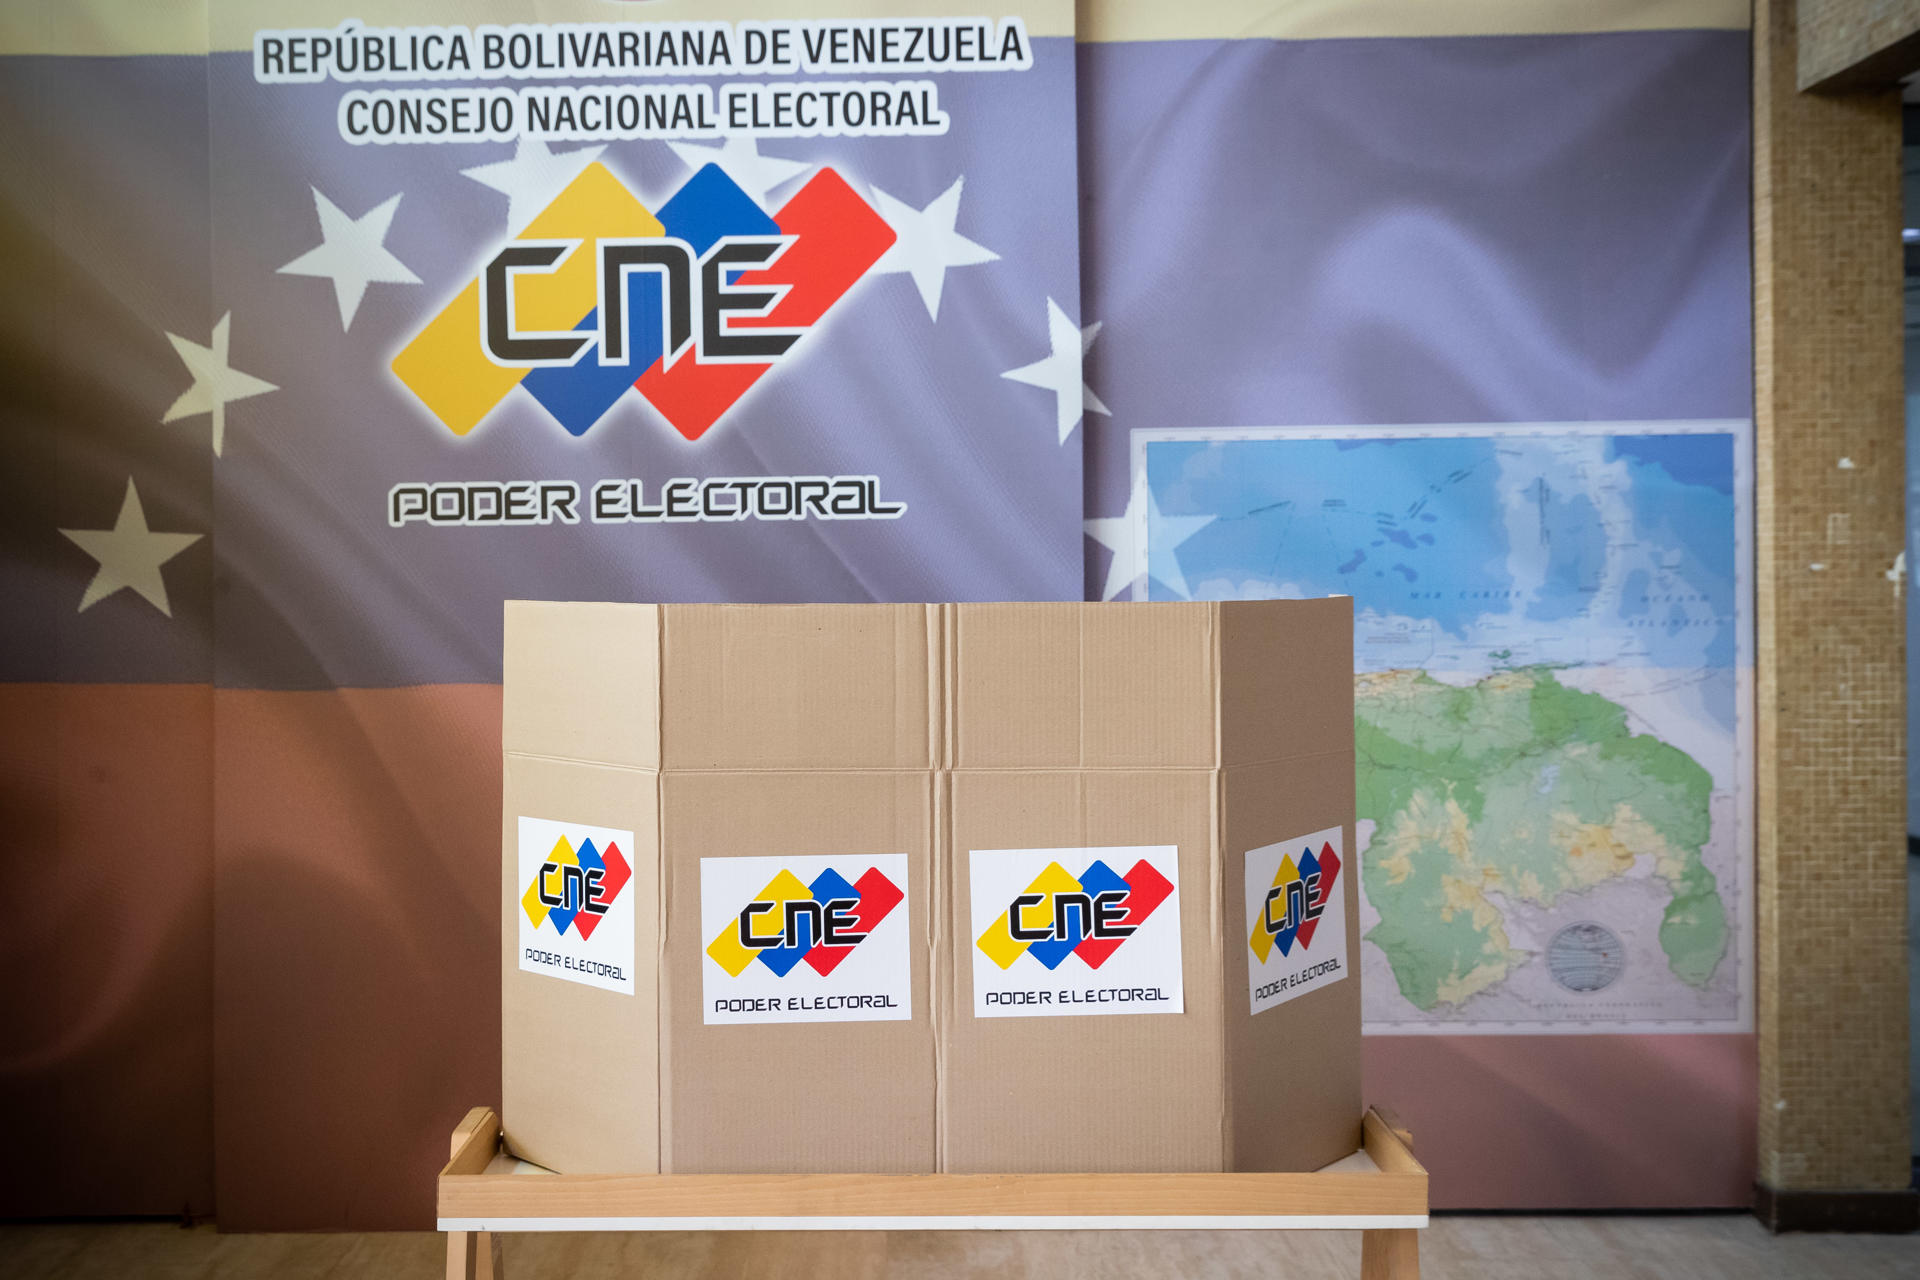 Tras el veto a la UE, no se sabe si habrá observadores fiables y crecen las dudas sobre la elección presidencial en Venezuela